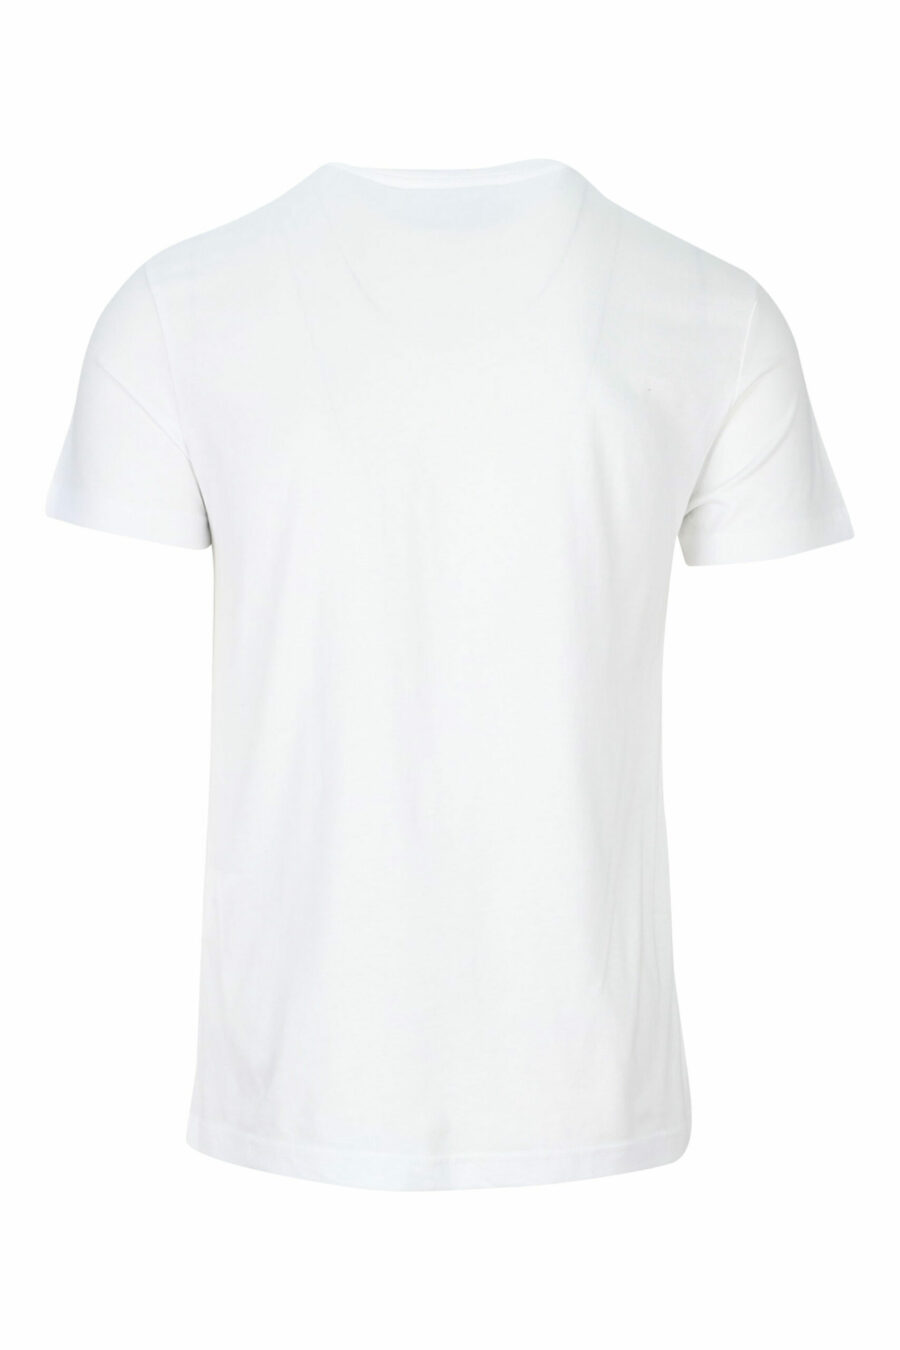 Camiseta blanca con minilogo circular dorado - 8052019468397 1 scaled